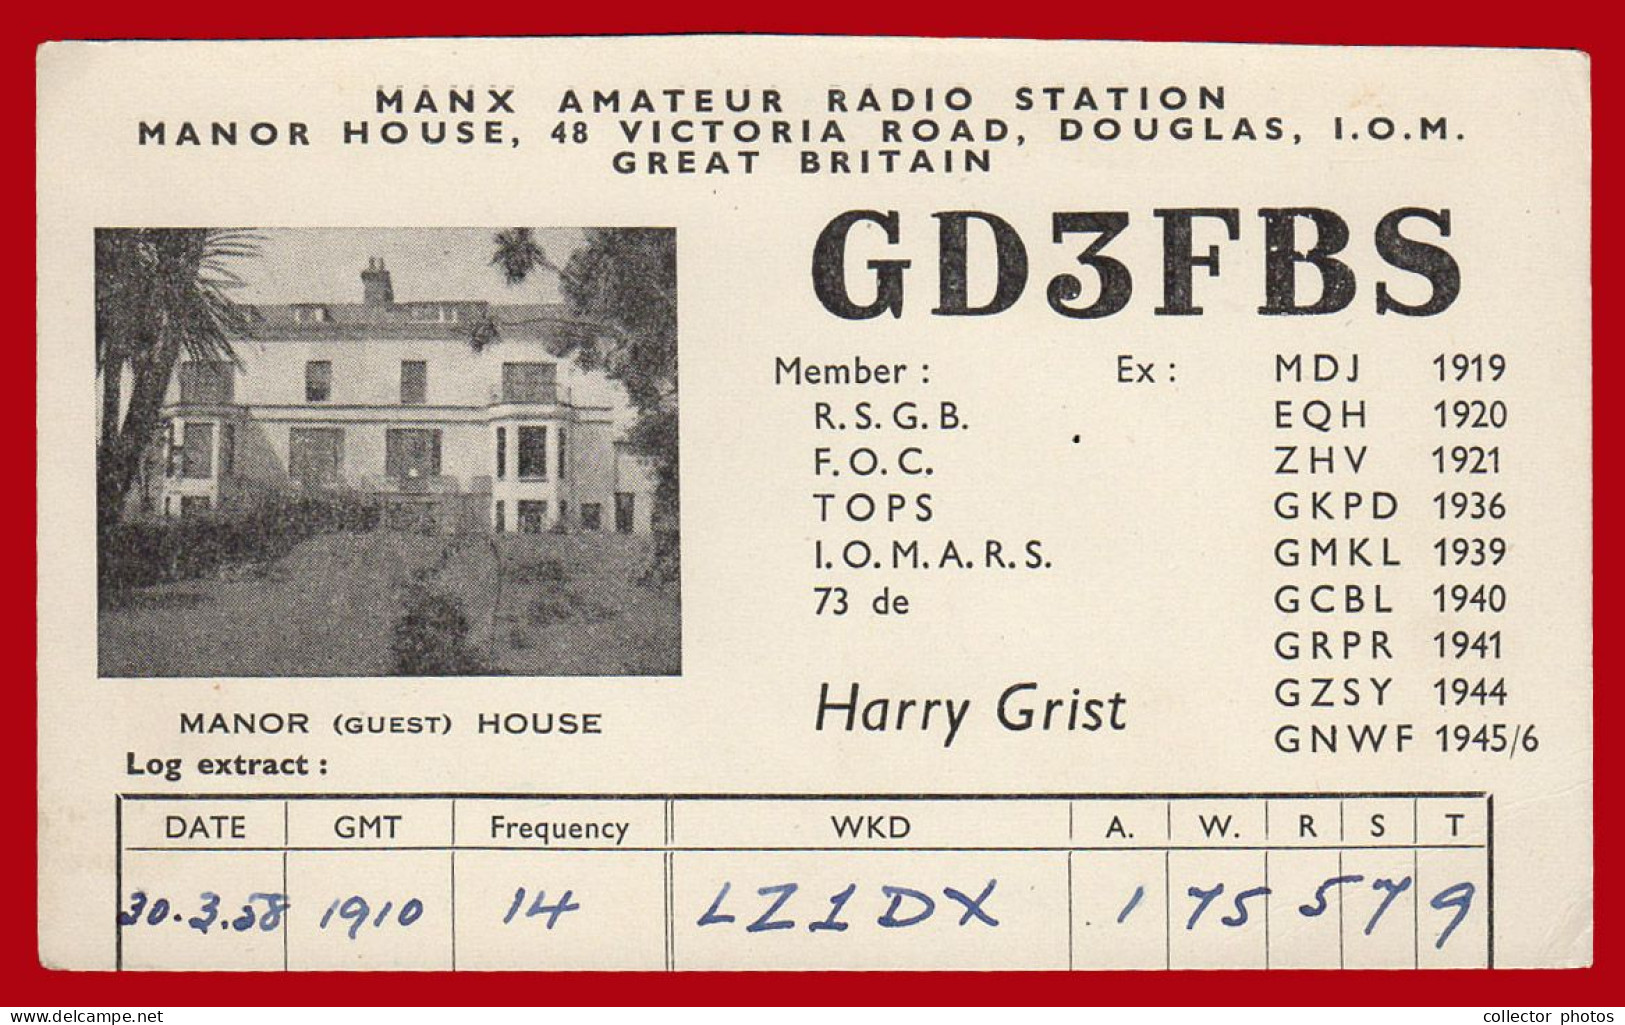 Lot of 12 vintage radio cards [de061]